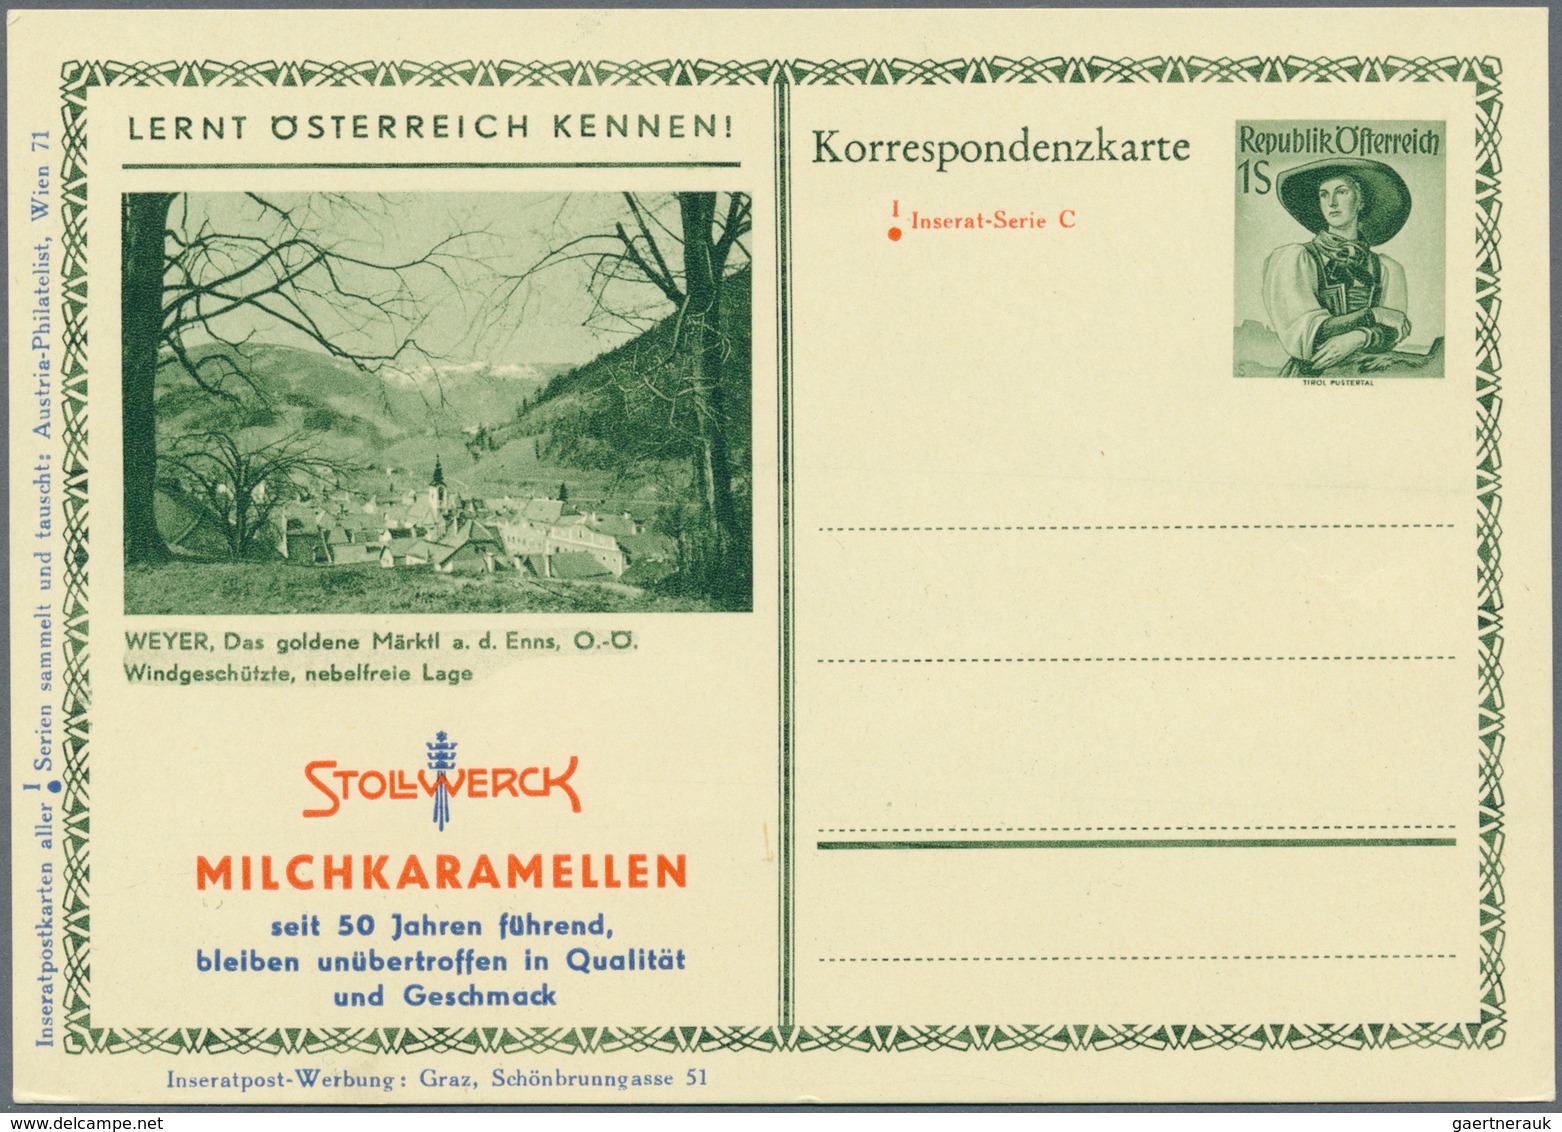 Österreich - Privatganzsachen: 1951, 1 S grün Trachten, 6 verschiedene Bildpostkarten (P 345) der IN